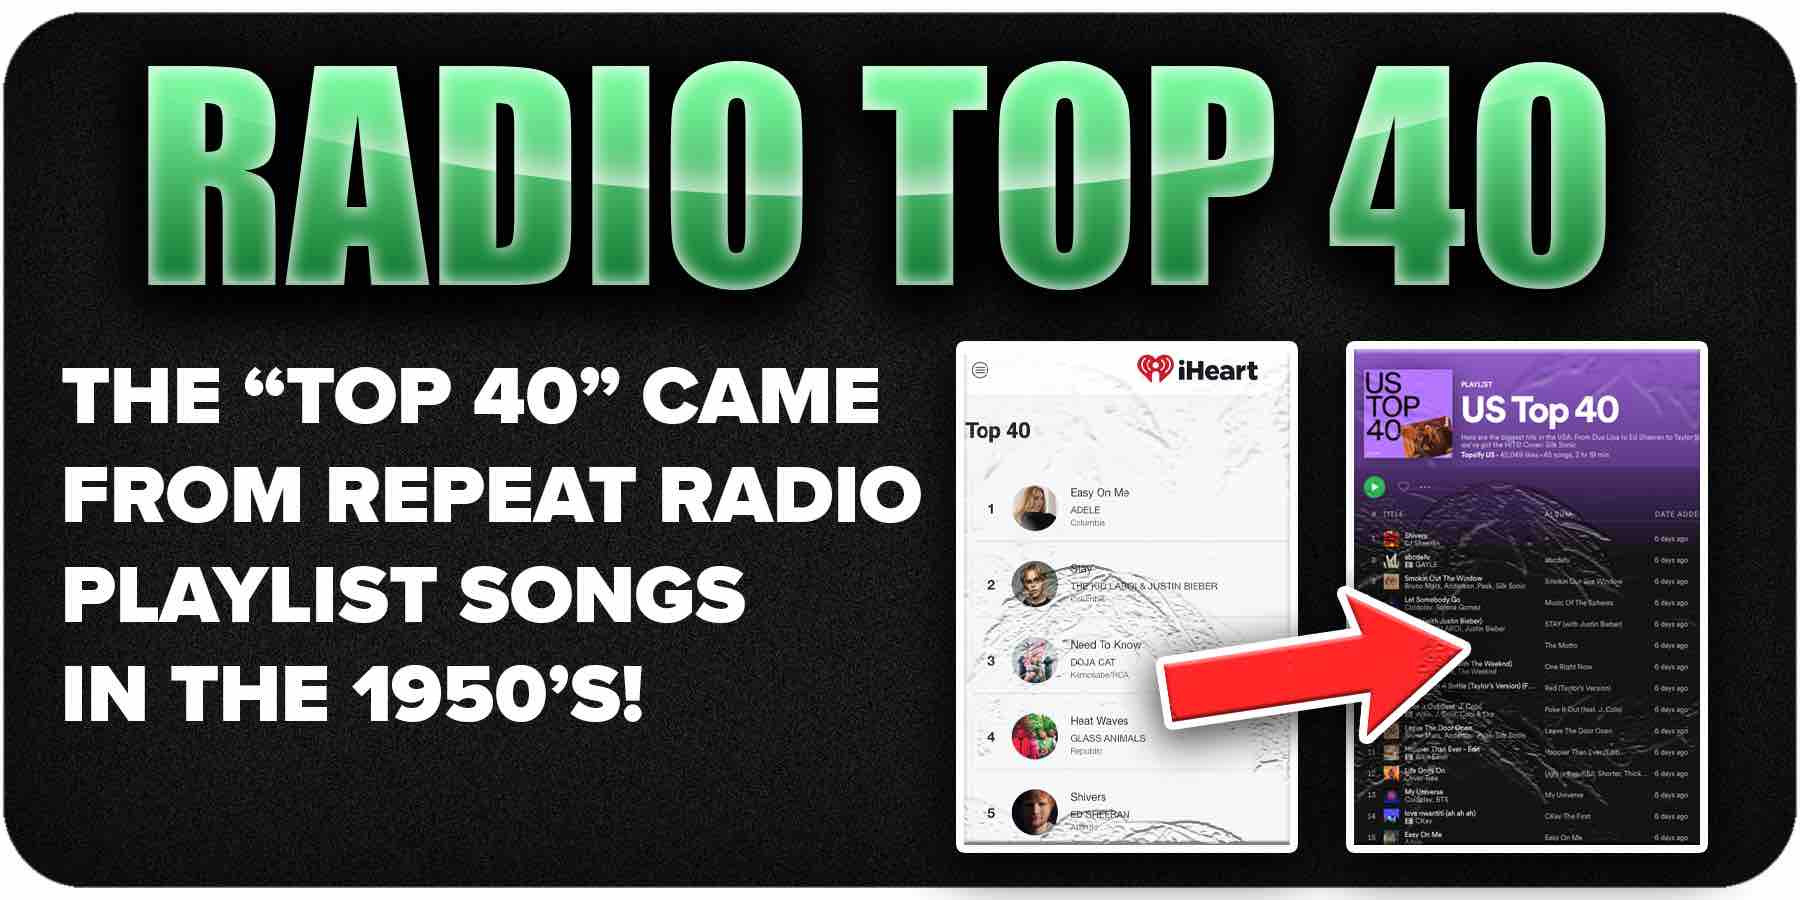 history of billboard radio top 40